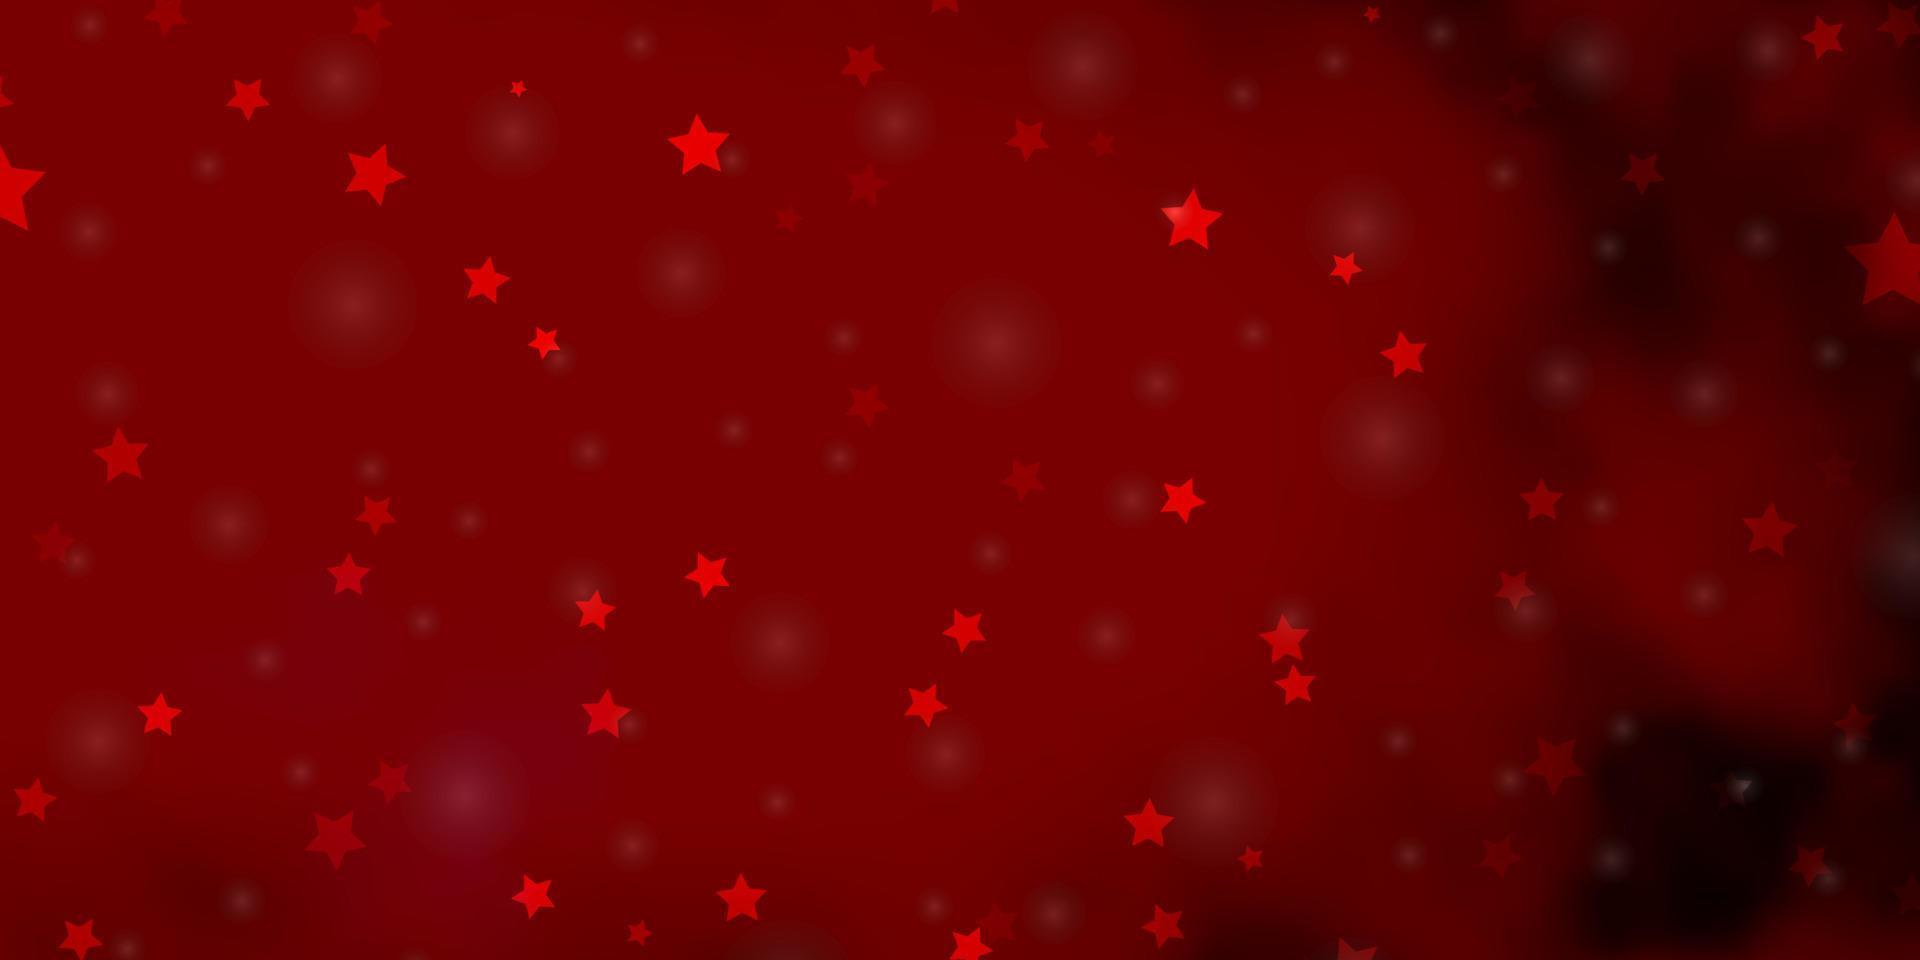 Fondo de vector rosa claro, rojo con estrellas pequeñas y grandes.